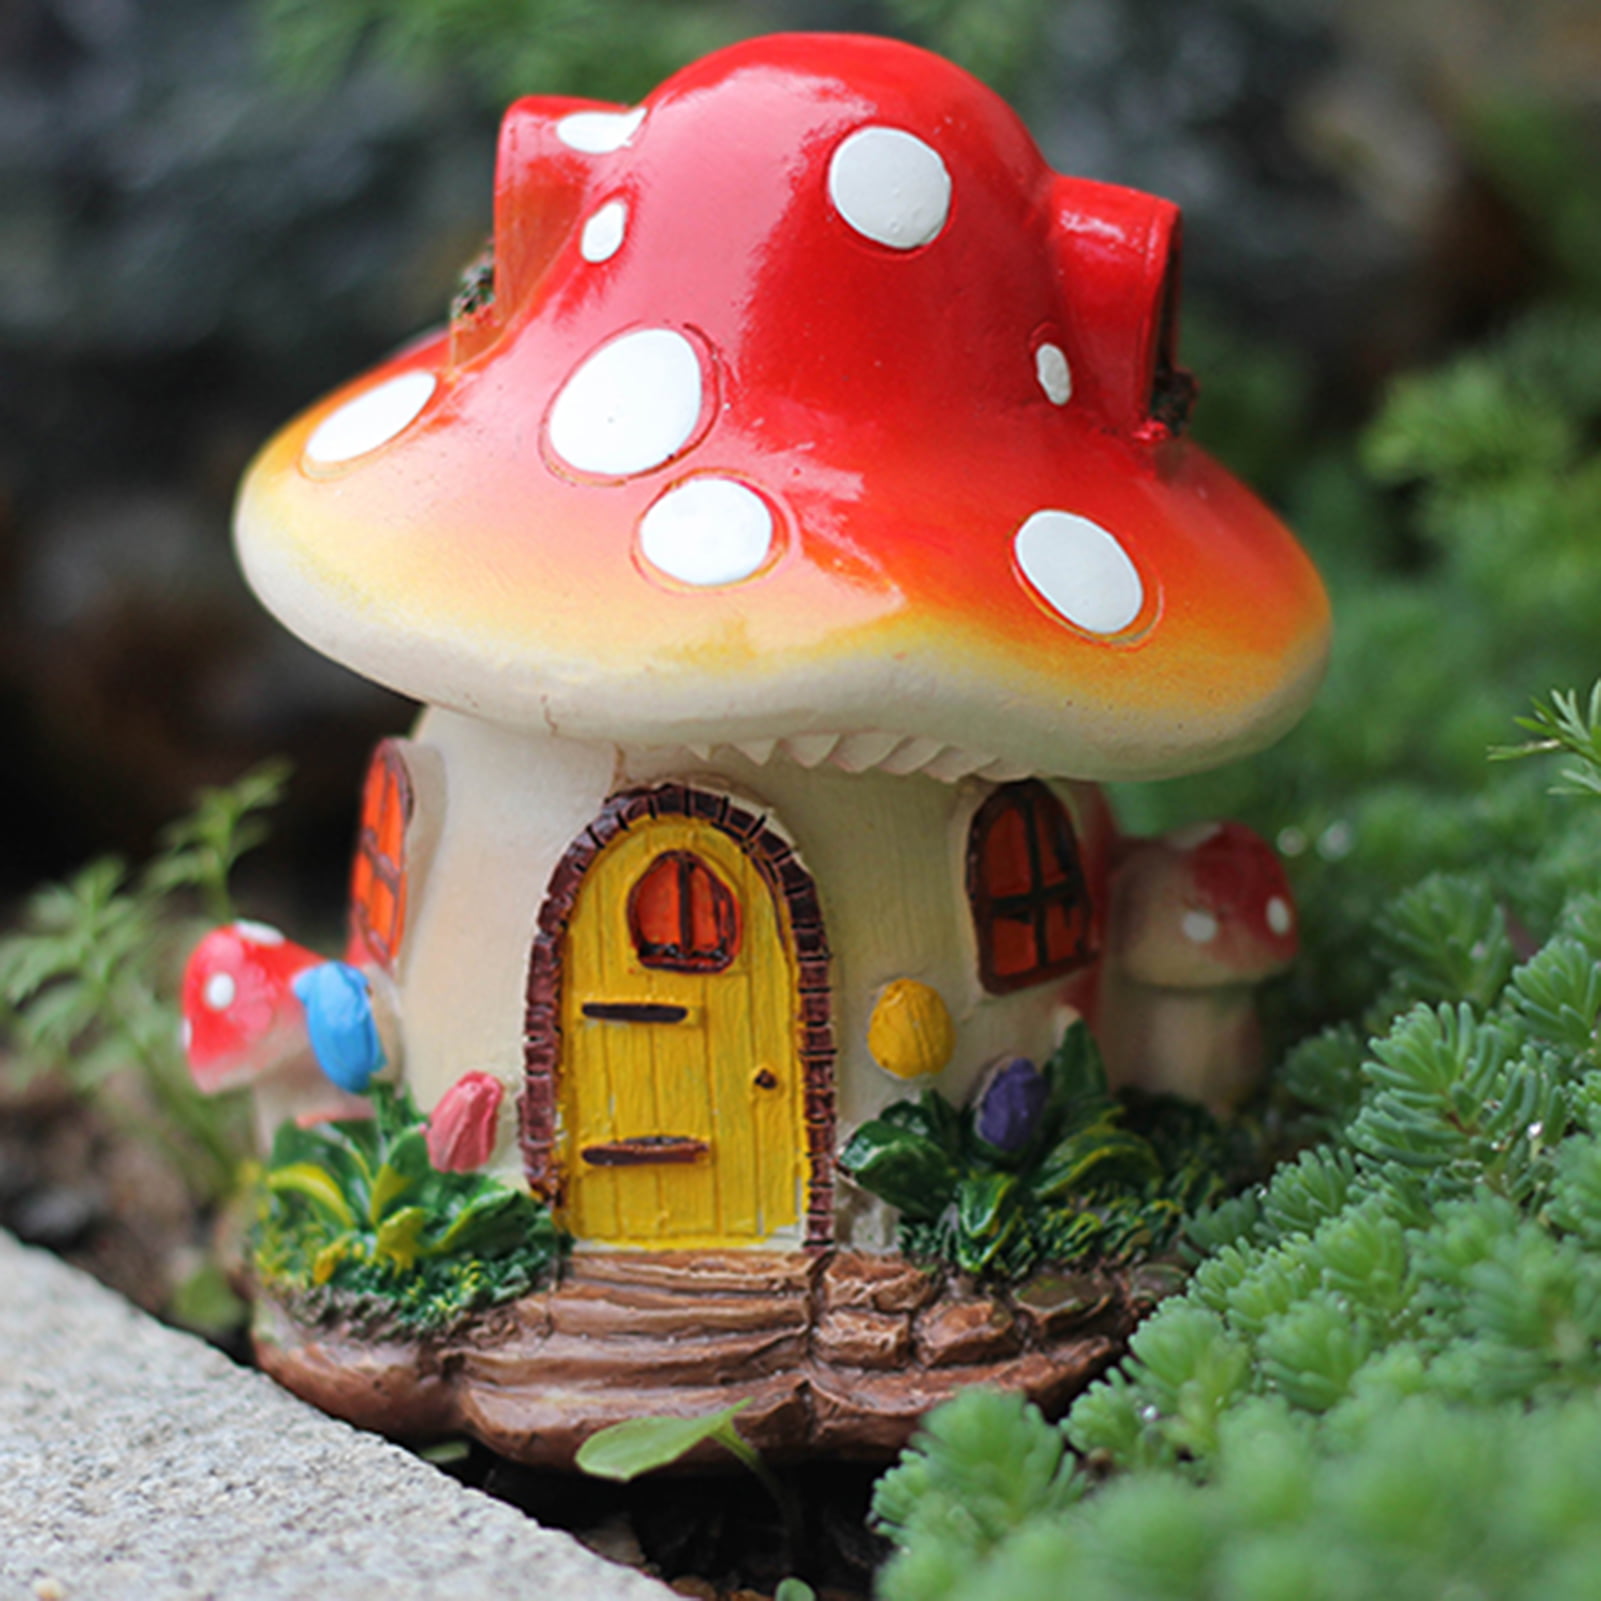 Fairy Mushroom Figurines Miniature Mushrooms Fairy Garden Mushrooms Small  Mushroom Ornaments Micro Landscape Plants Bonsai Craft Decor 